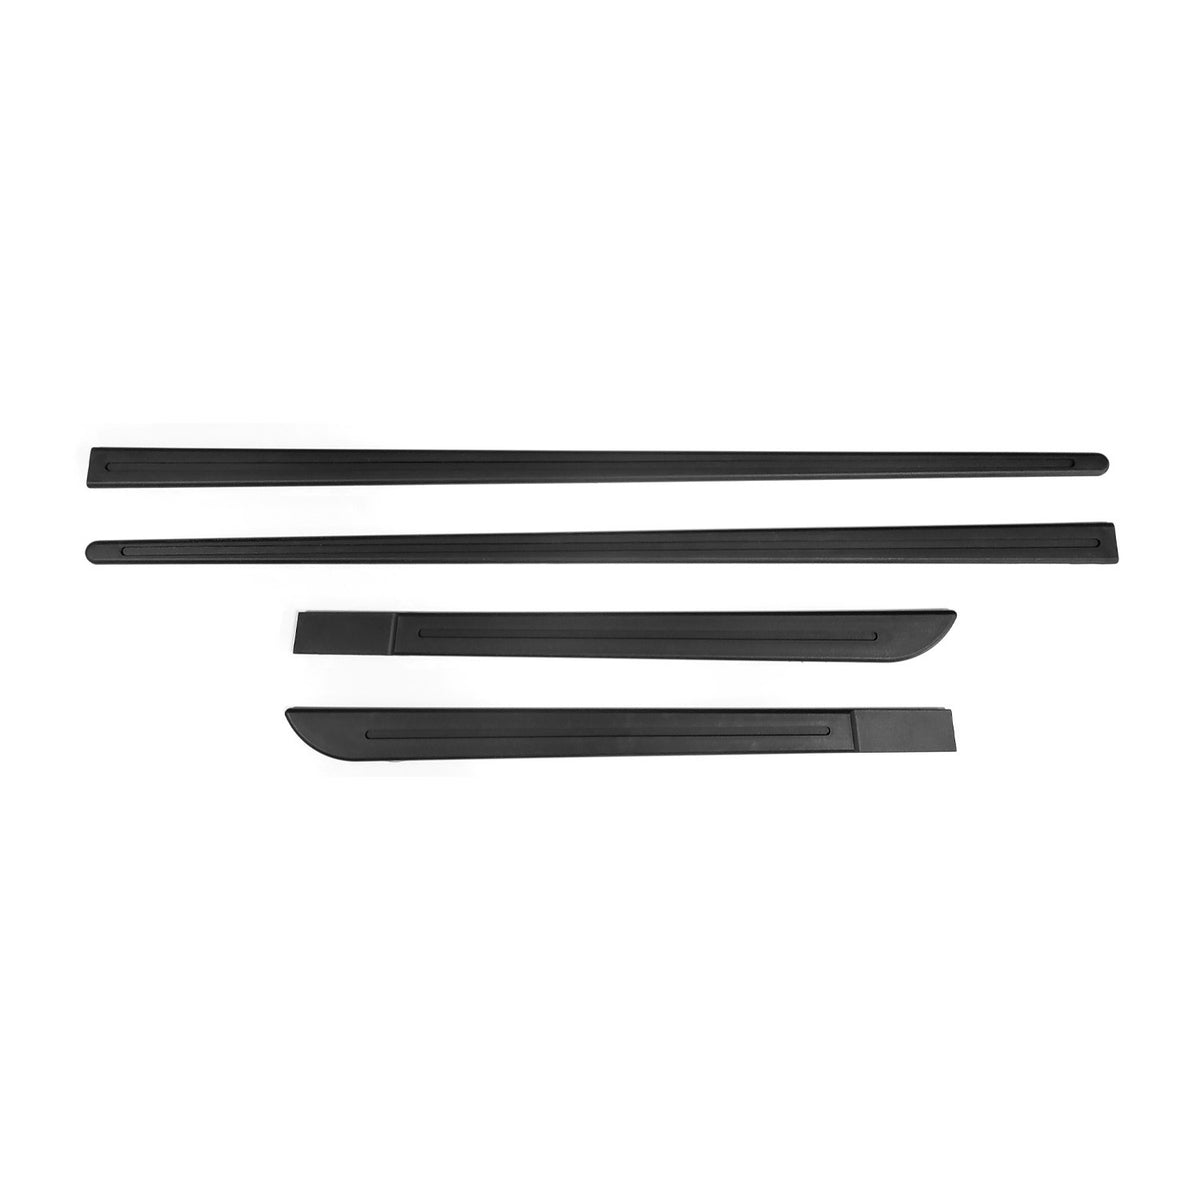 Türschutzleisten Seitenschutzleisten für Peugeot 508 Türleisten Schwarz PP 4tlg